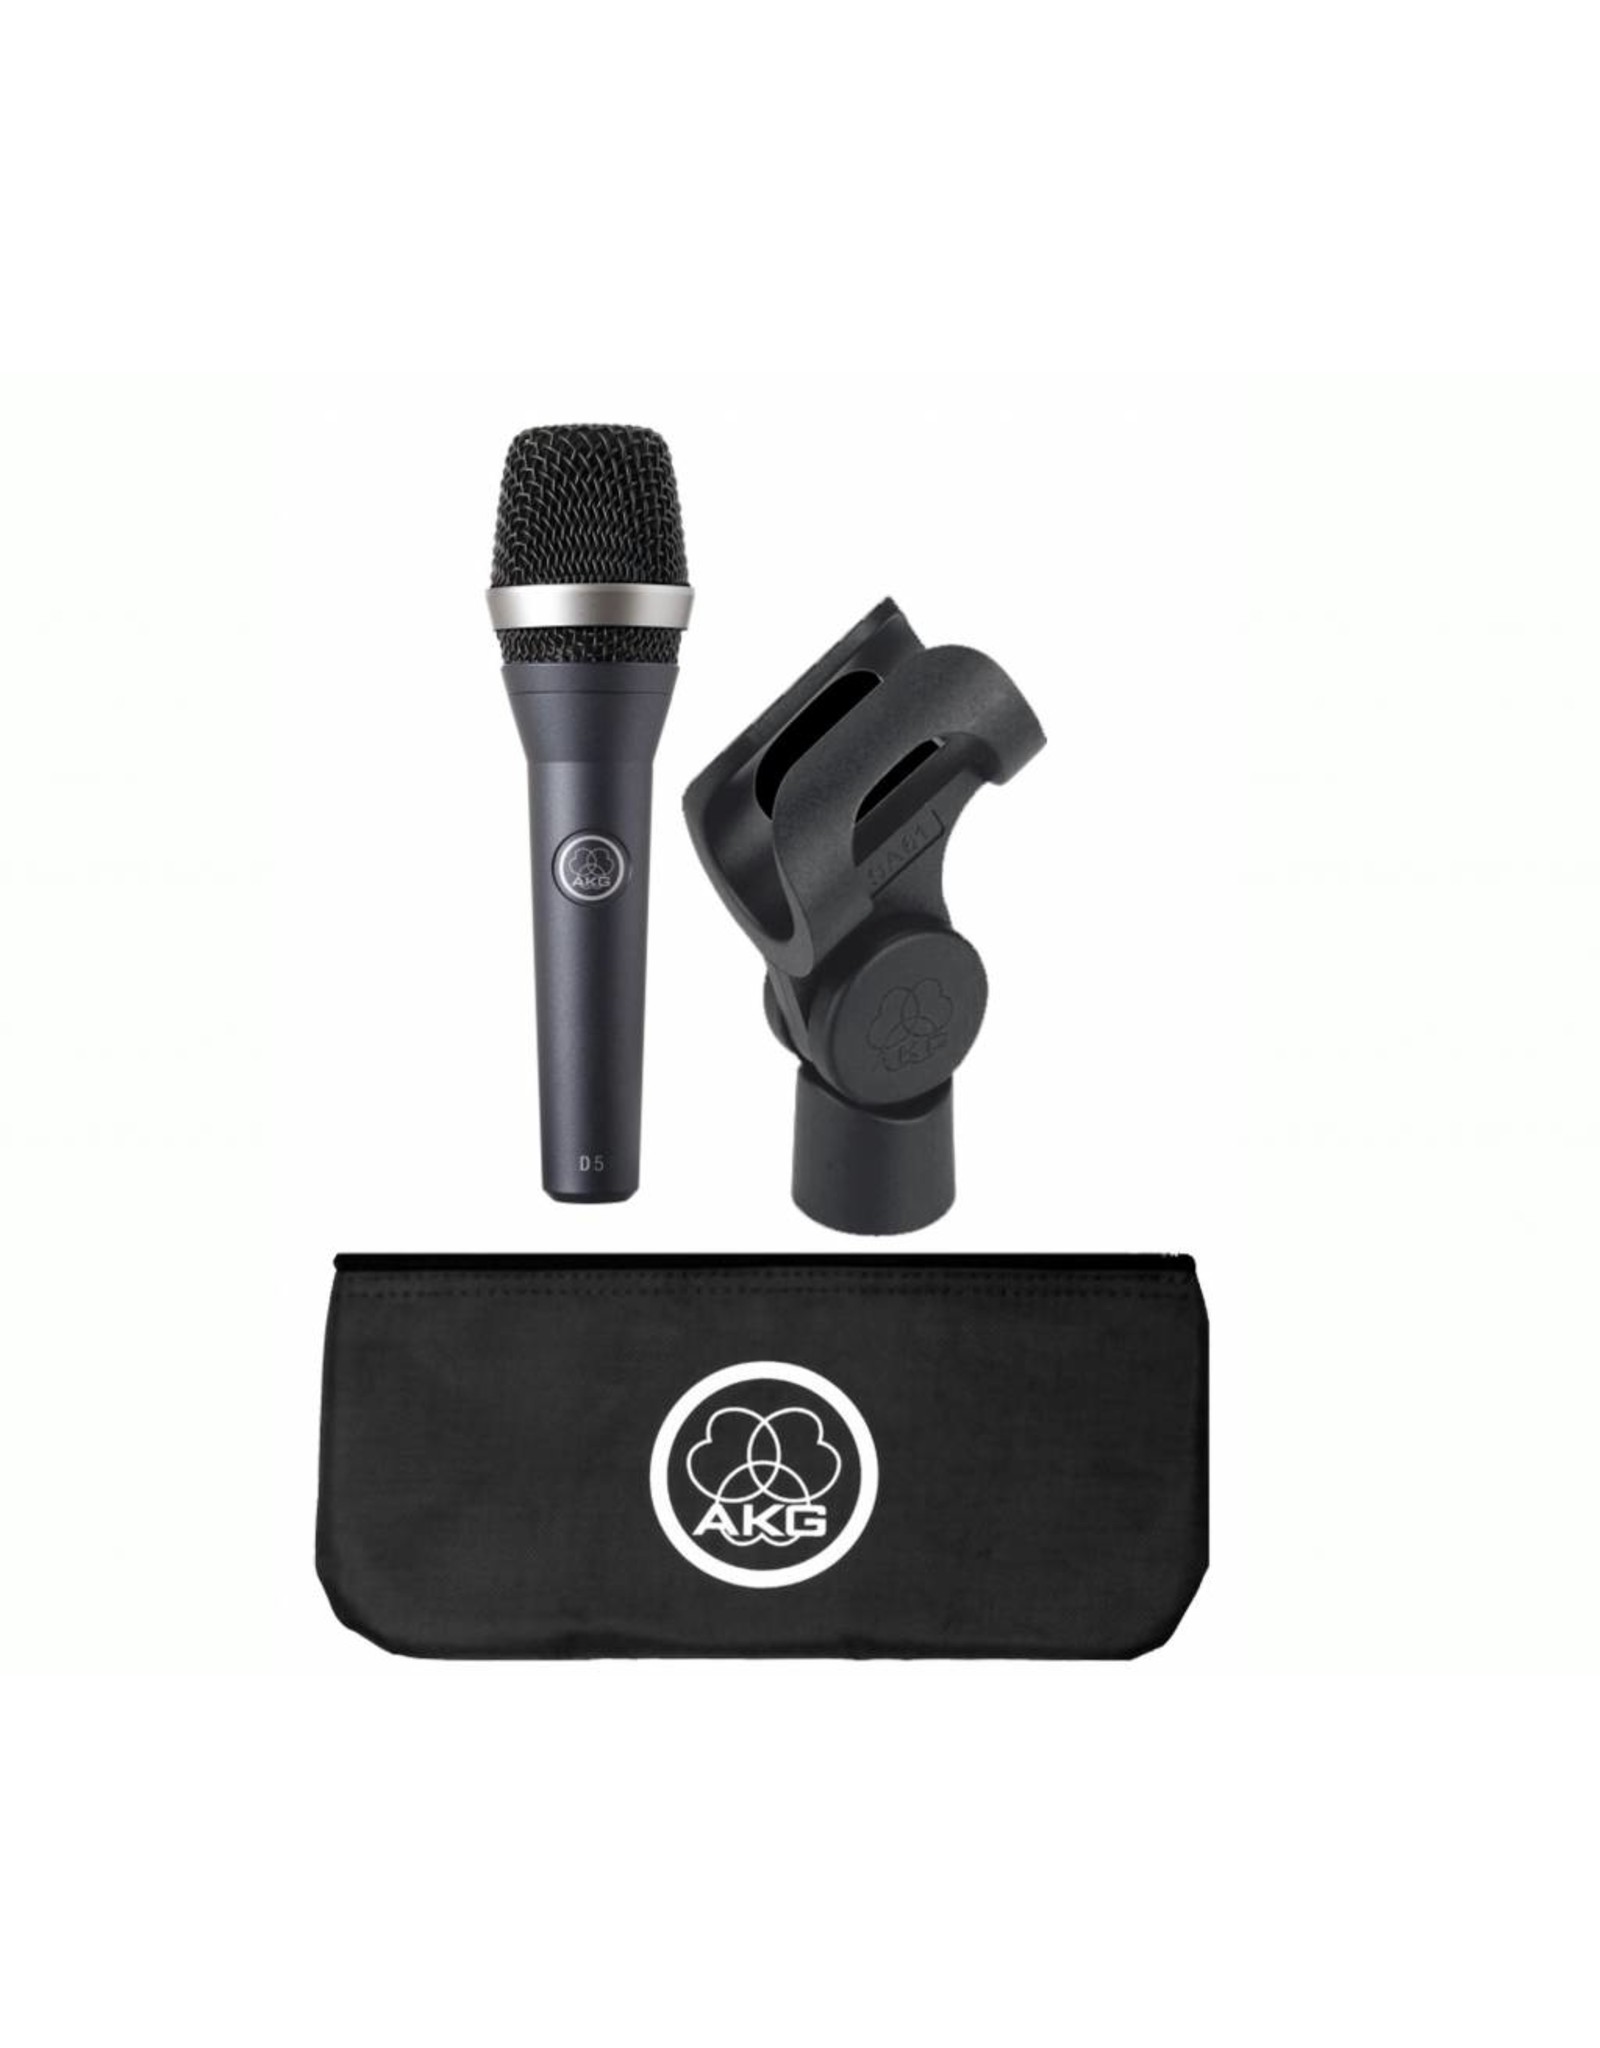 AKG  D5 microphone dynamic